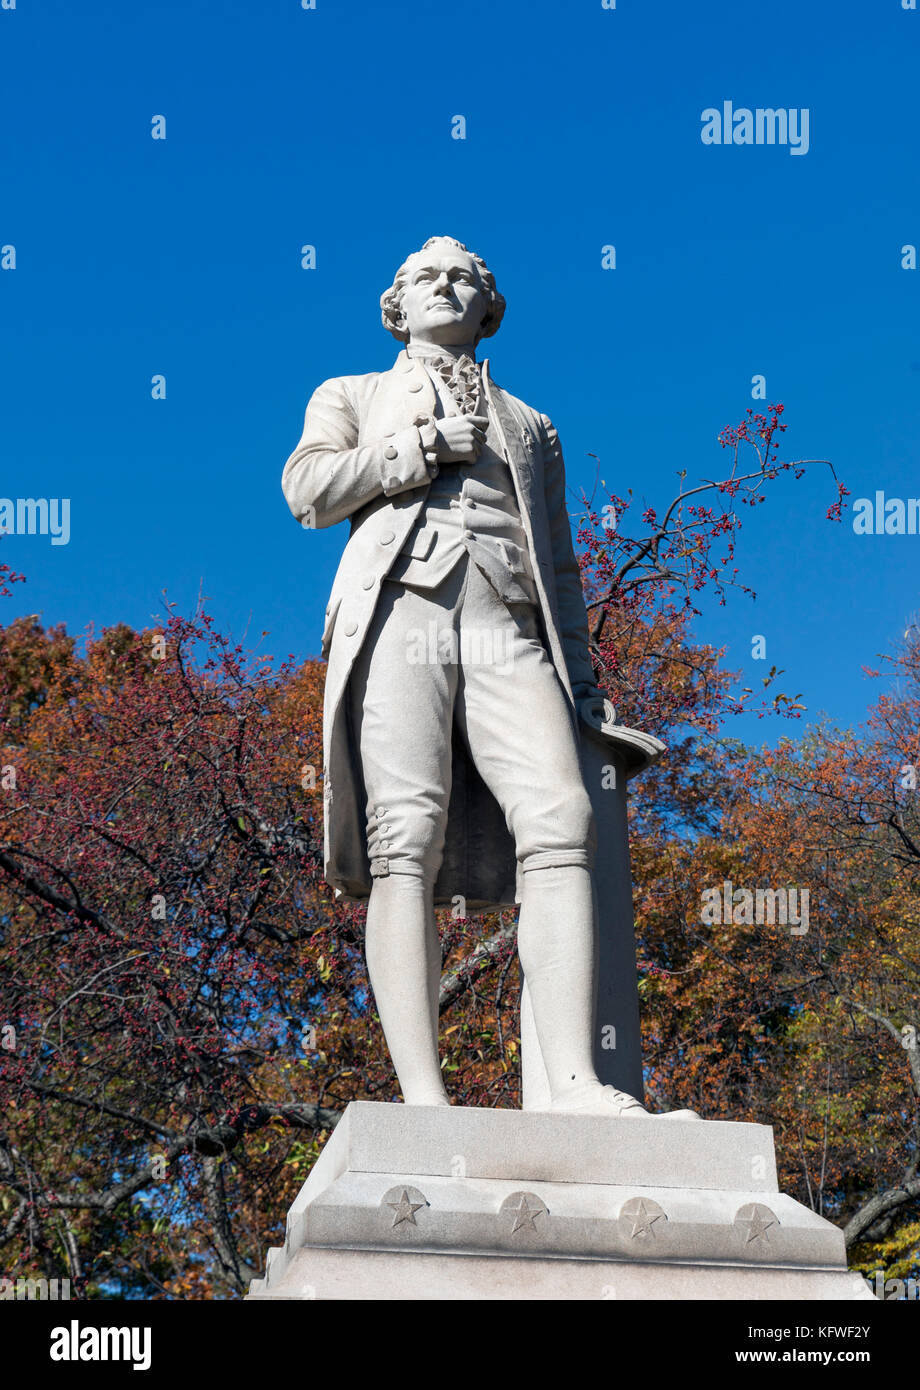 Statue of Alexander Hamilton (1755-1804) in Central Park, New York City, NY, USA Stock Photo